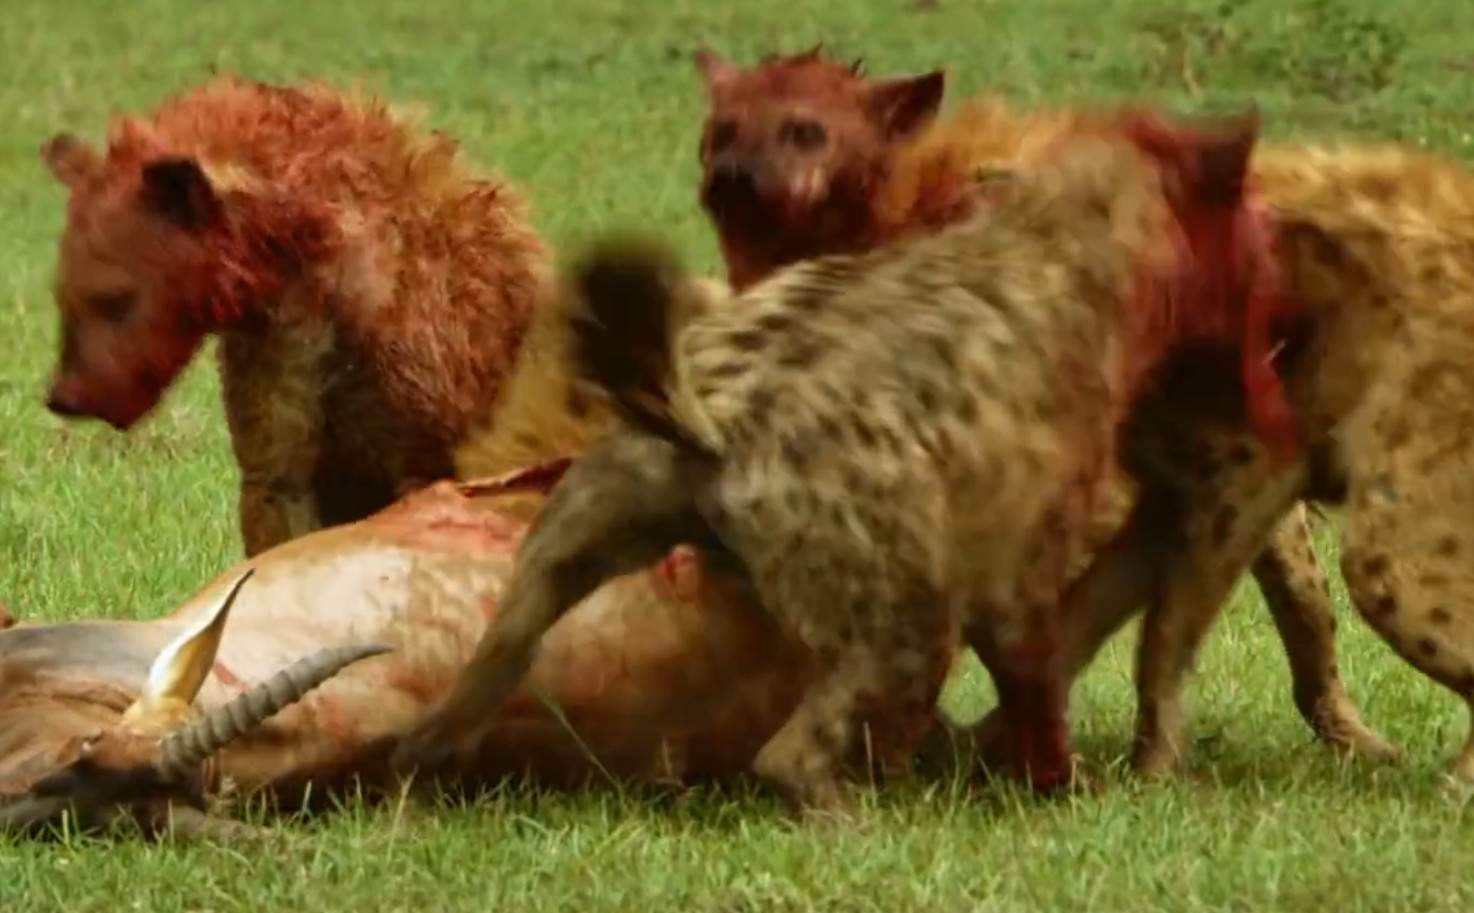 Gemeinsam machen sich dann alle über die Beute her. Dabei geht es recht blutig zu. Aber bei solch einem großen Beutetier wird der ganze Hyänen-Clan satt.